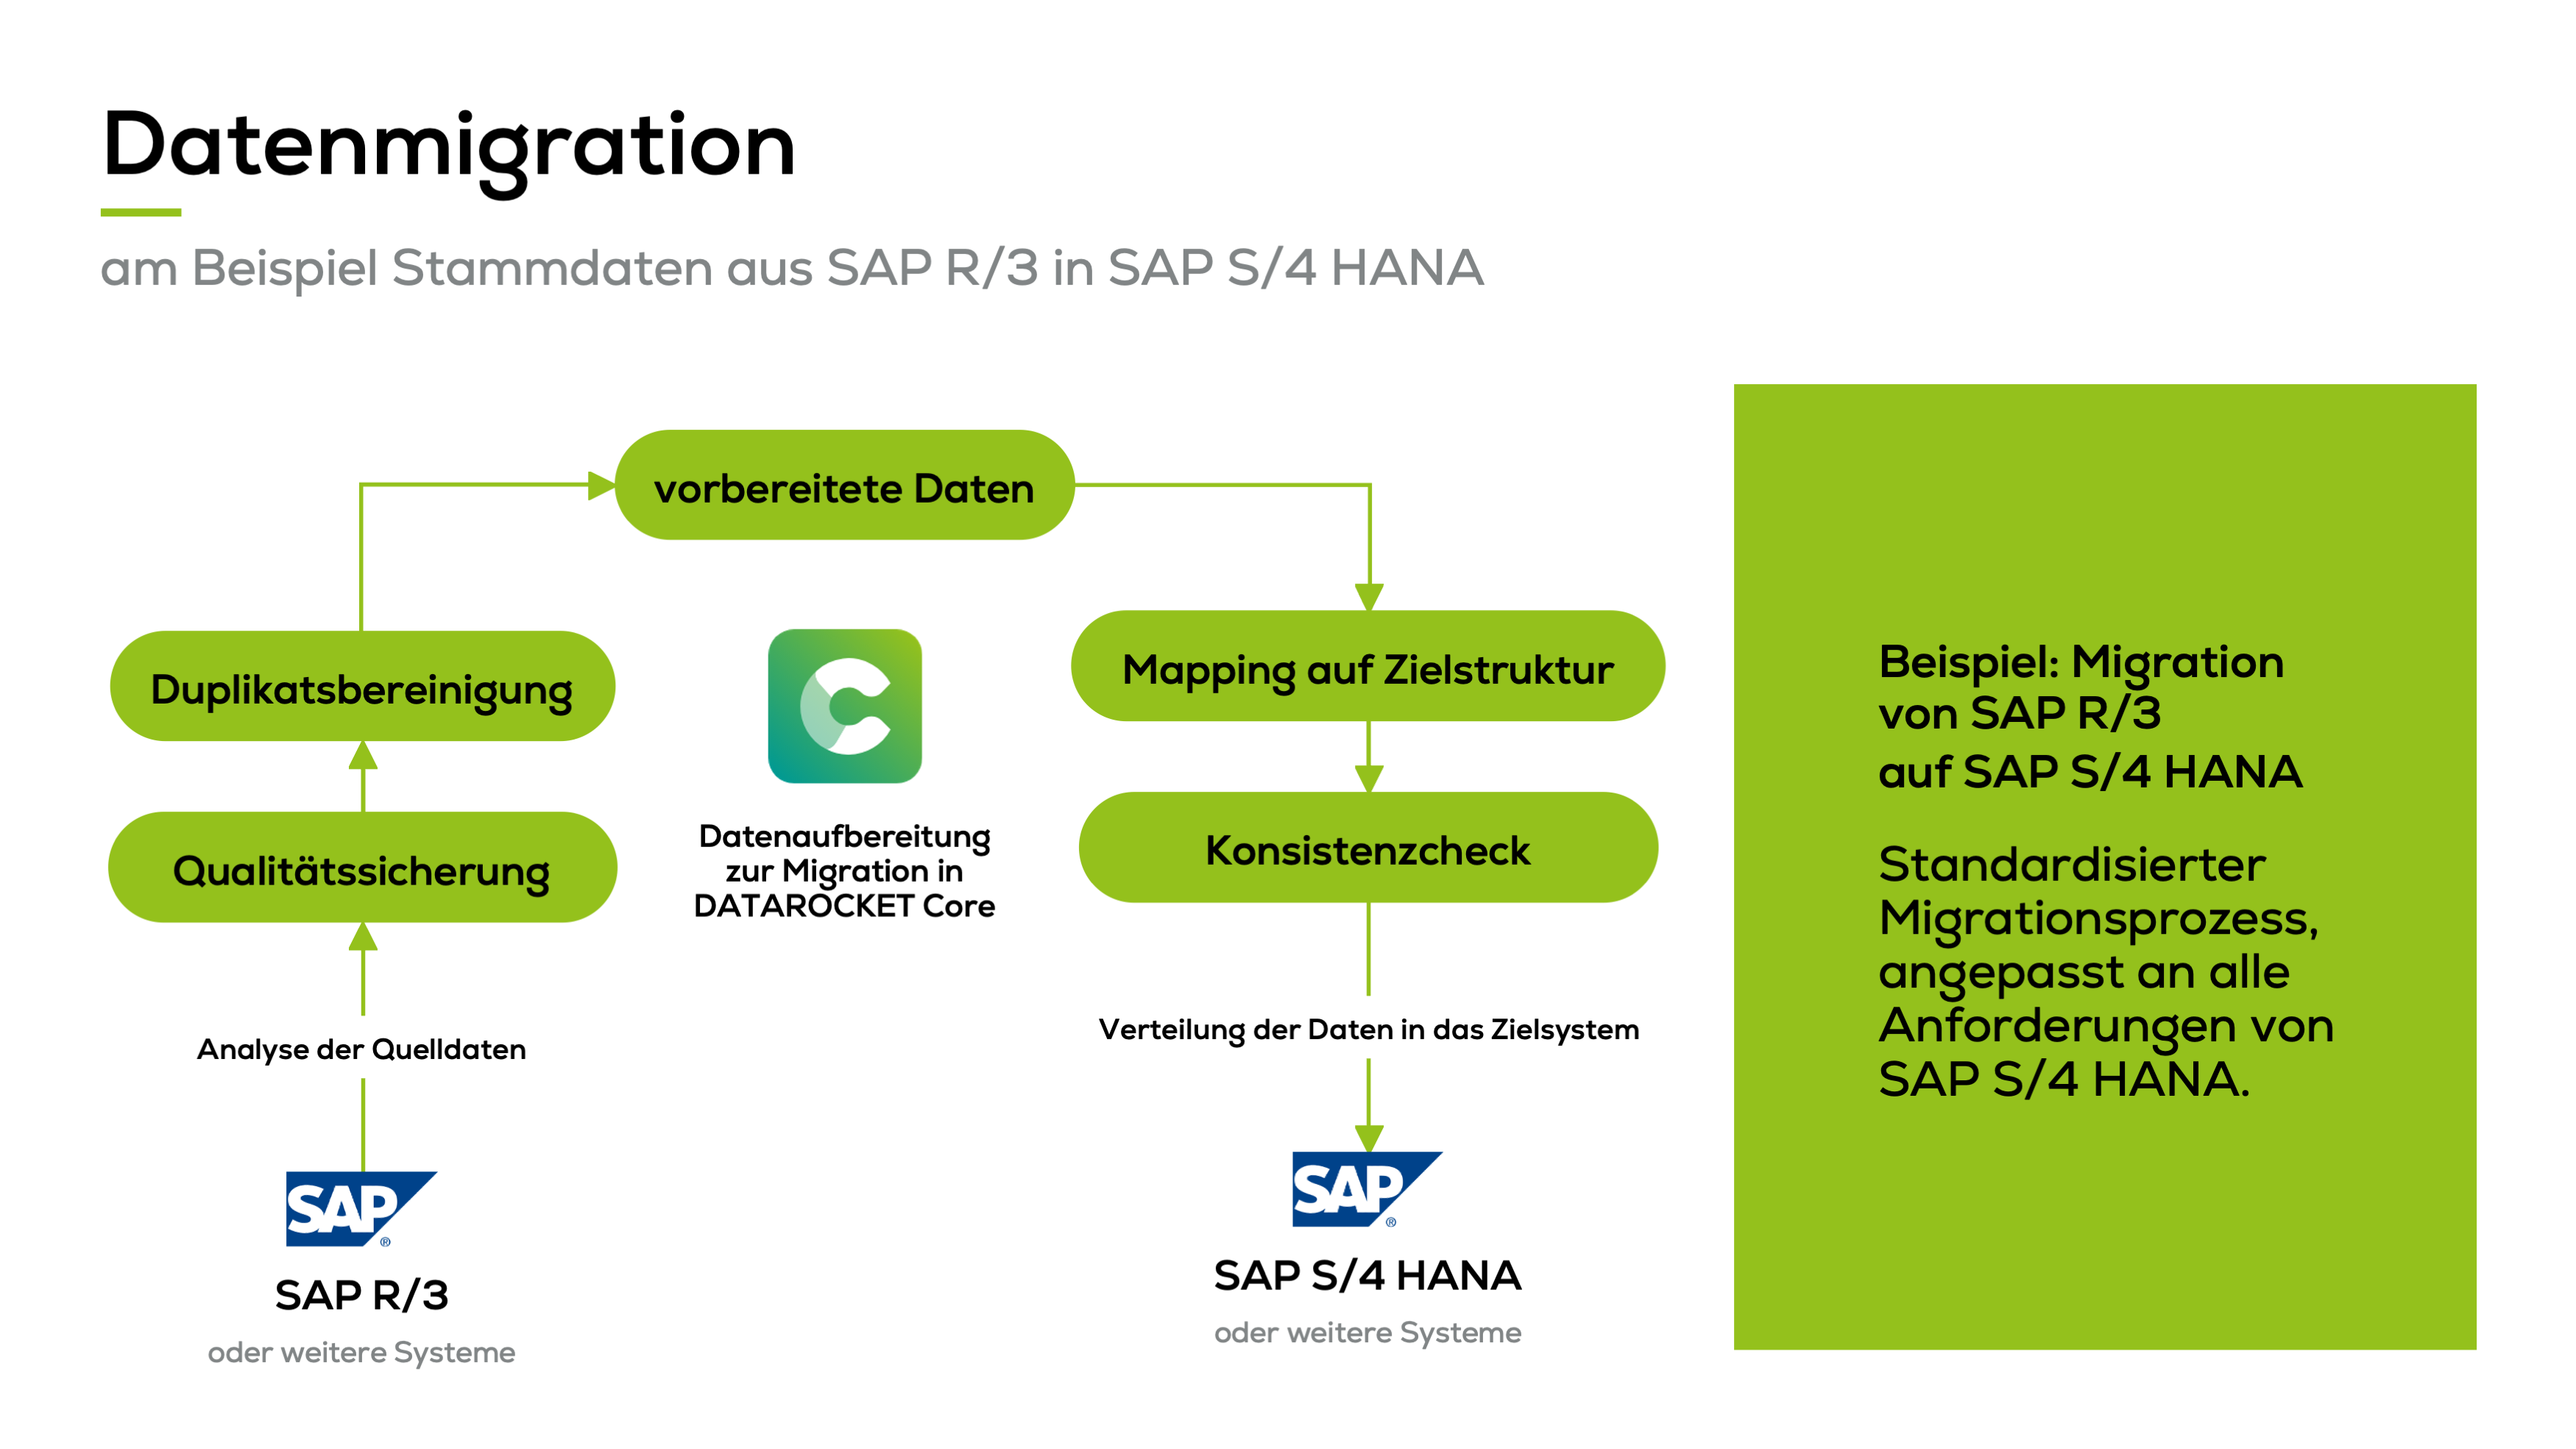 Datenmigration am Beispiel der Migration von Stammdaten aus SAP R3 in SAP S4 HANA